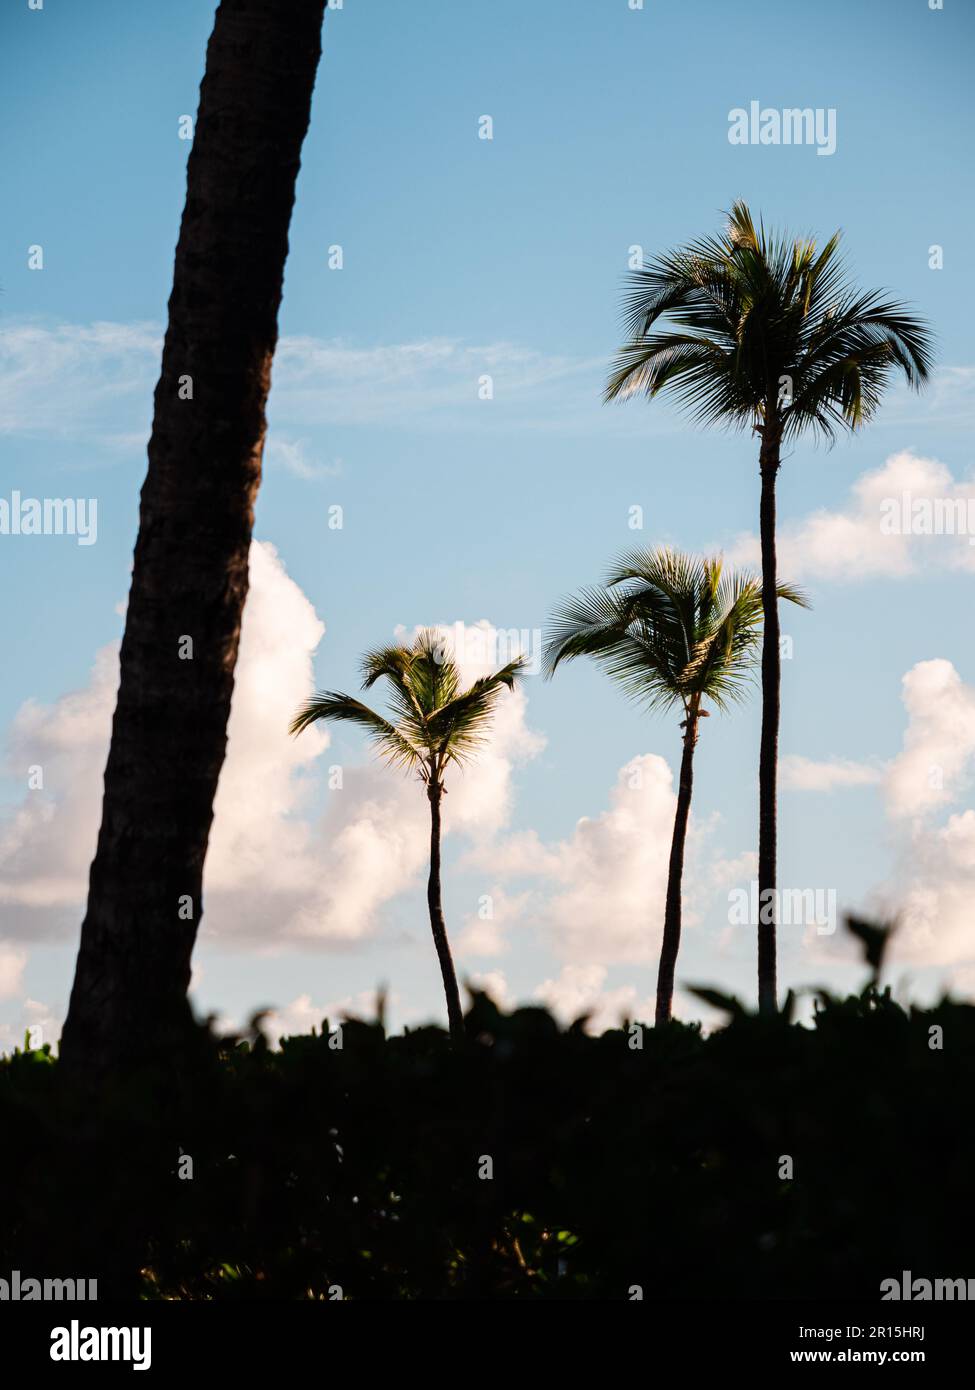 Alberi di palma alla luce di un'alba di prima mattina. Ci sono cieli blu e nuvole bianche dietro le cime delle palme da cocco in questa scena tropicale. Foto Stock